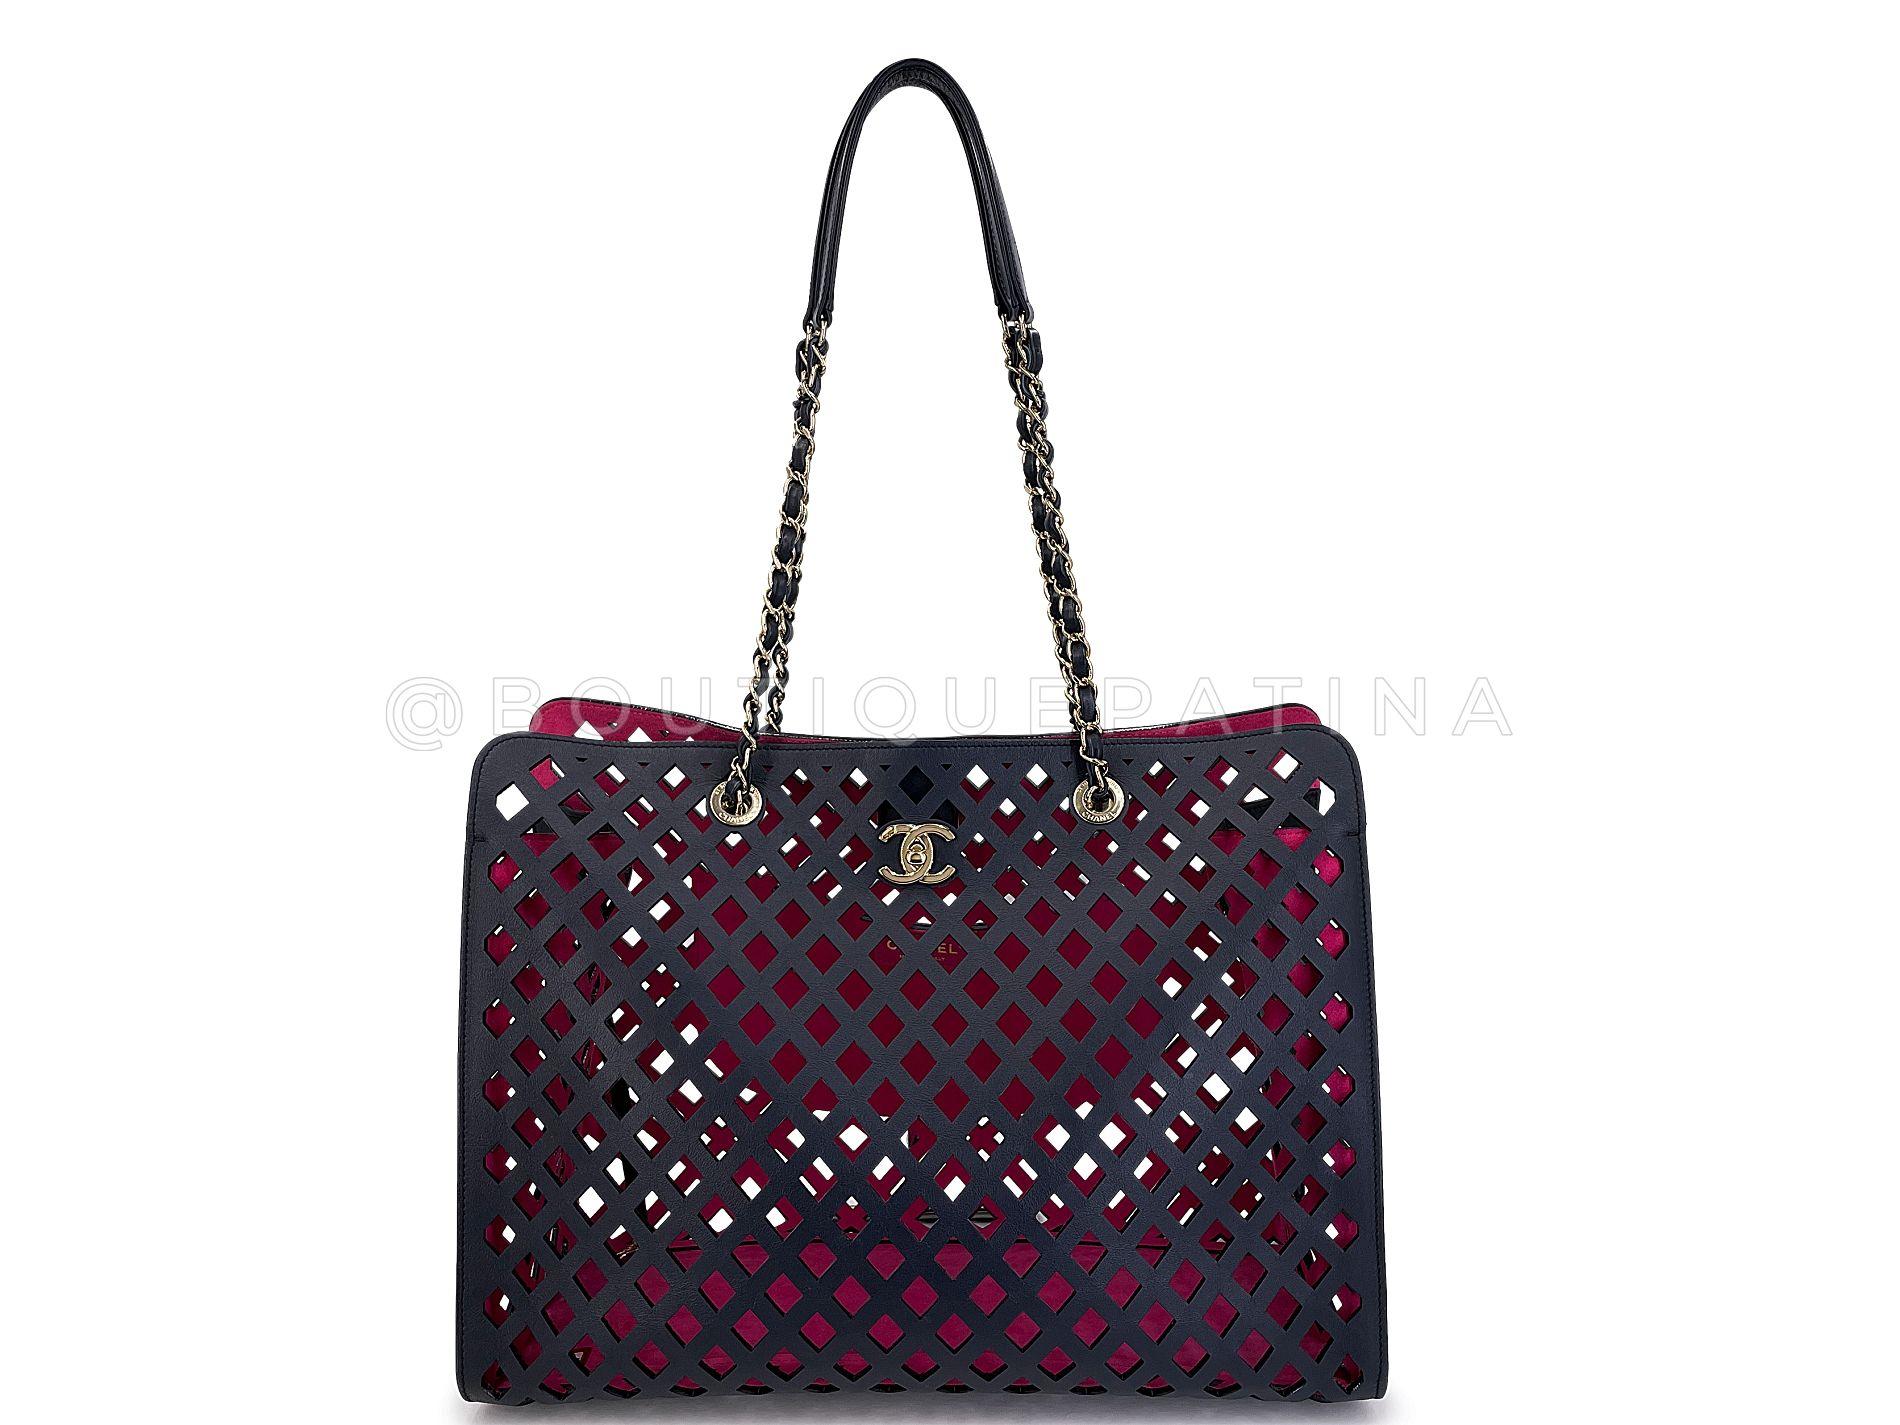 Chanel Black Fuchsia Pink Diamond Cutout Shopper Tote Bag 67861 In Excellent Condition For Sale In Costa Mesa, CA